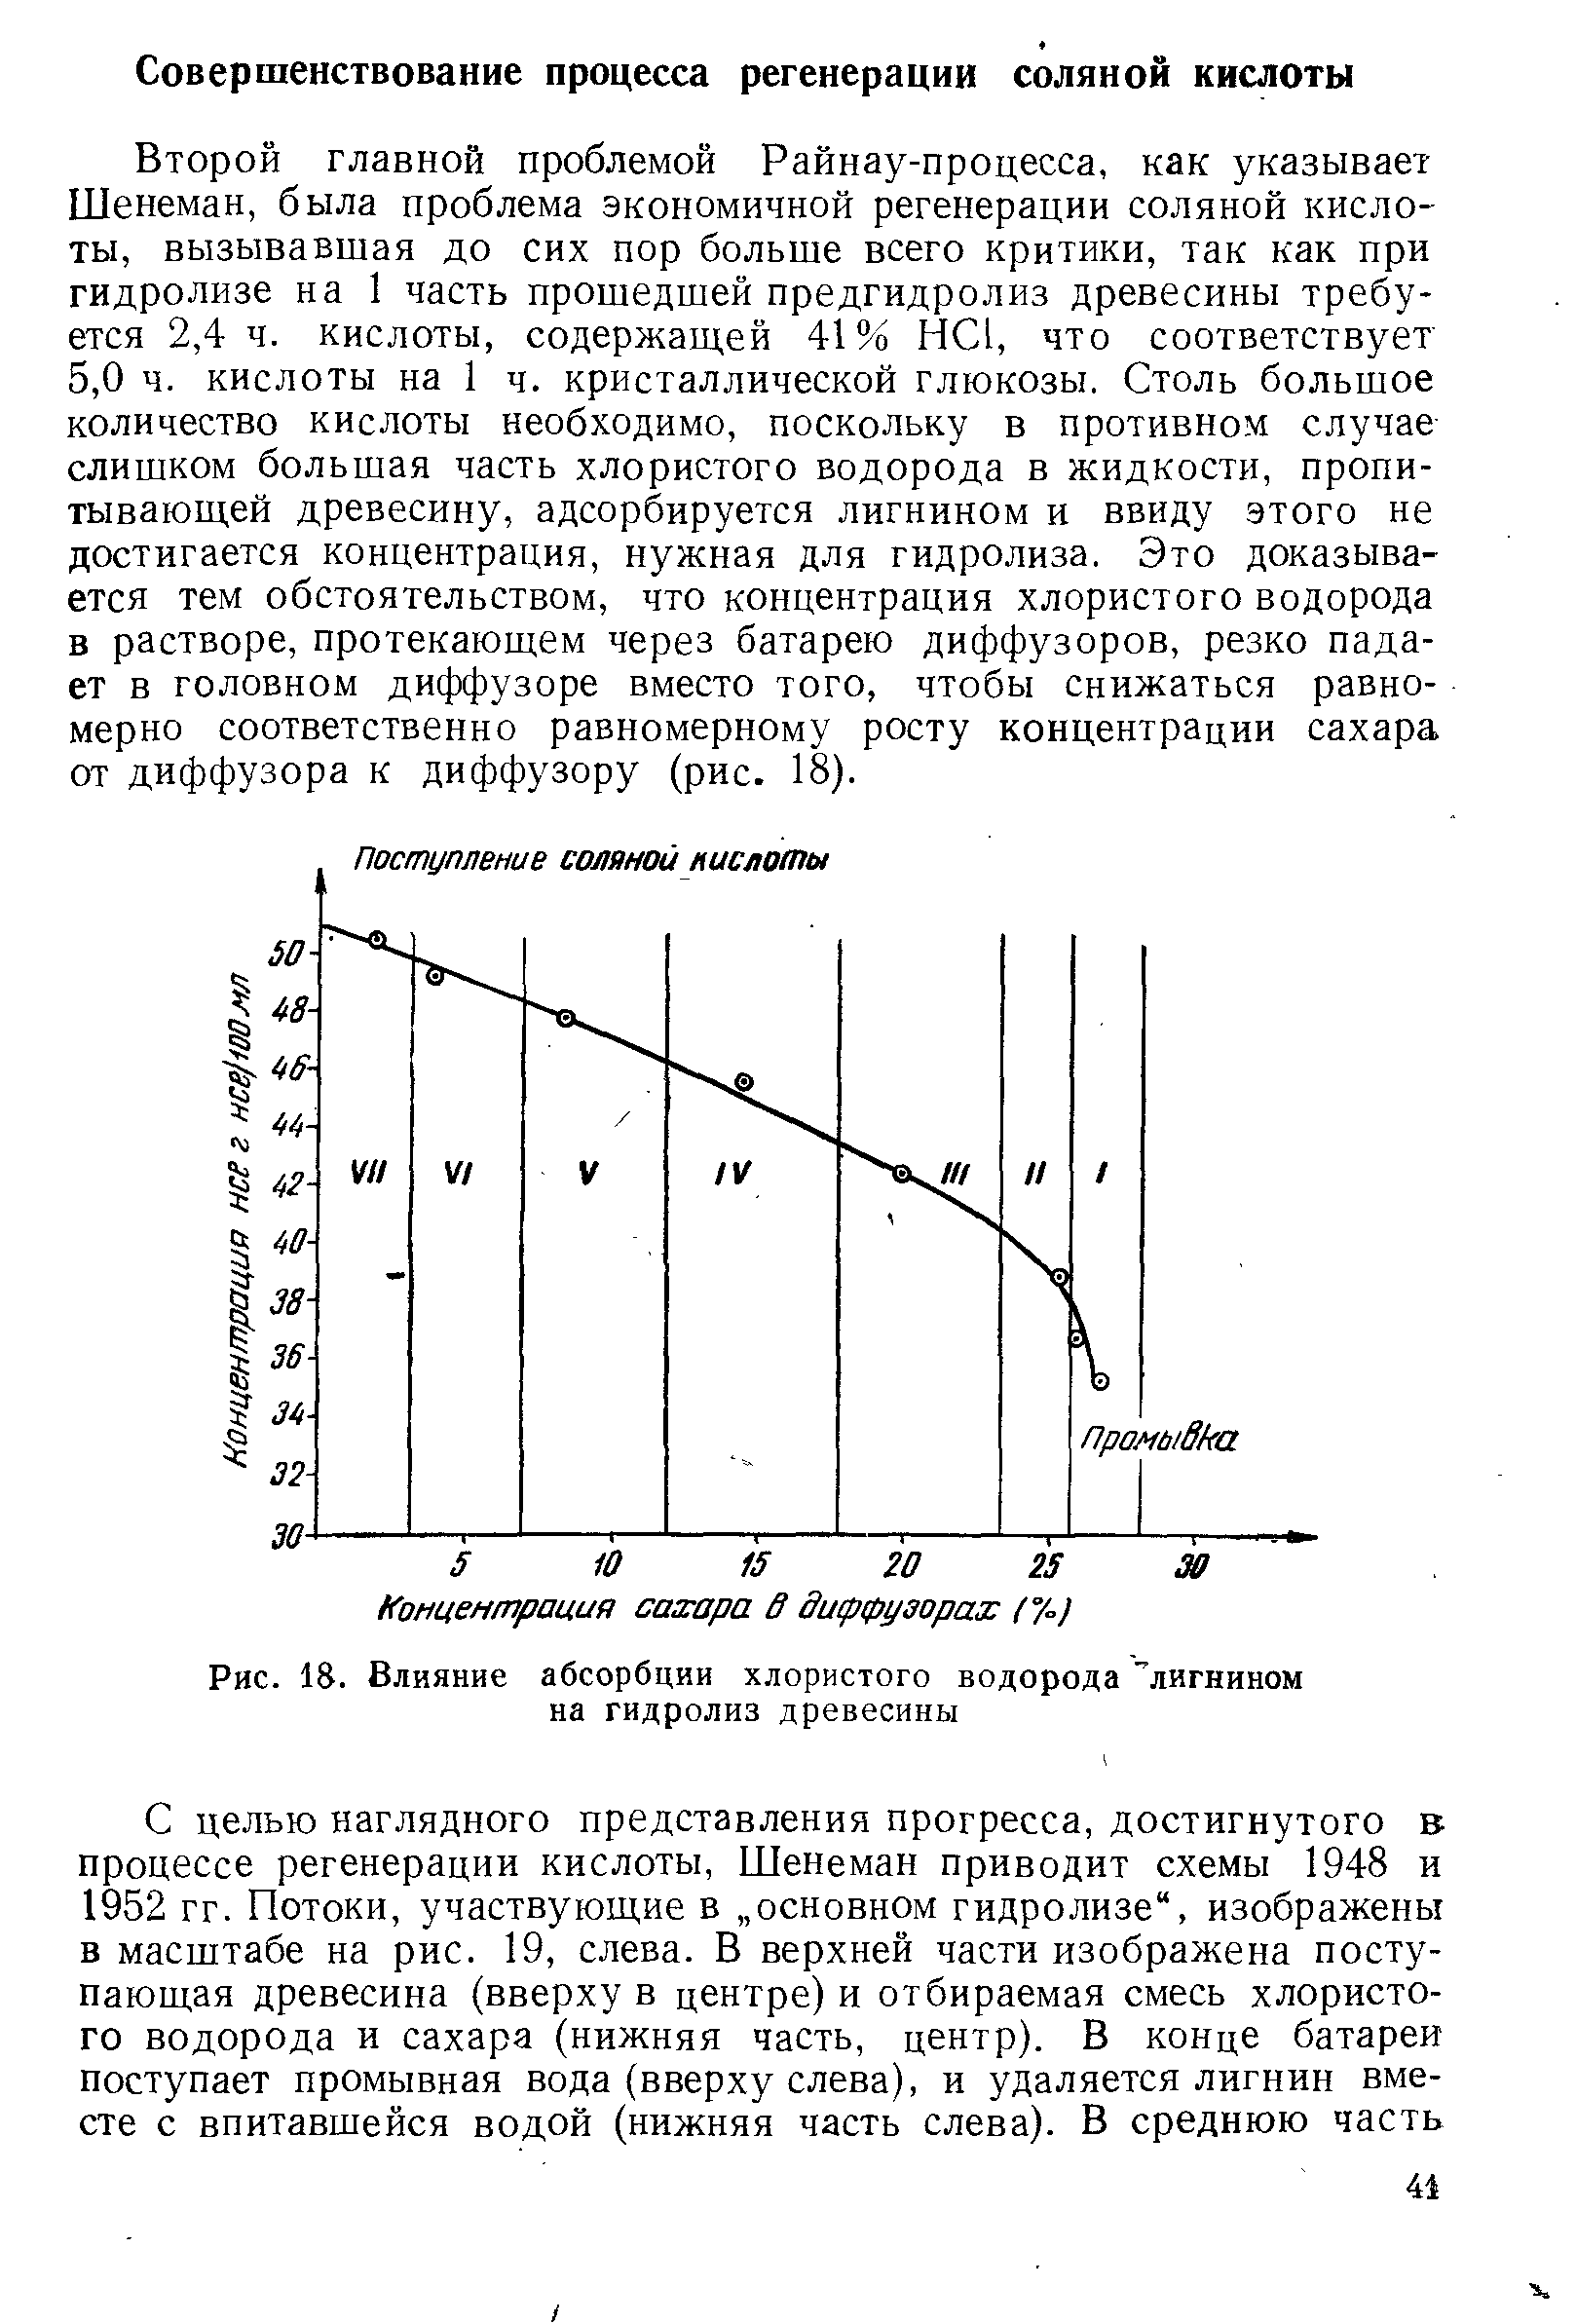 Второй главной проблемой Райнау-процесса, как указывает Шенеман, была проблема экономичной регенерации соляной кислоты, вызывавшая до сих пор больше всего критики, так как при гидролизе на 1 часть прошедшей предгидролиз древесины требуется 2,4 ч. кислоты, содержащей 41% НС1, что соответствует 5,0 ч. кислоты на 1 ч. кристаллической глюкозы. Столь большое количество кислоты необходимо, поскольку в противном случае слишком большая часть хлористого водорода в жидкости, пропитывающей древесину, адсорбируется лигнином и ввиду этого не достигается концентрация, нужная для гидролиза. Это доказывается тем обстоятельством, что концентрация хлористого водорода в растворе, протекающем через батарею диффузоров, резко падает в головном диффузоре вместо того, чтобы снижаться равномерно соответственно равномерному росту концентрации сахара от диффузора к диффузору (рис. 18).